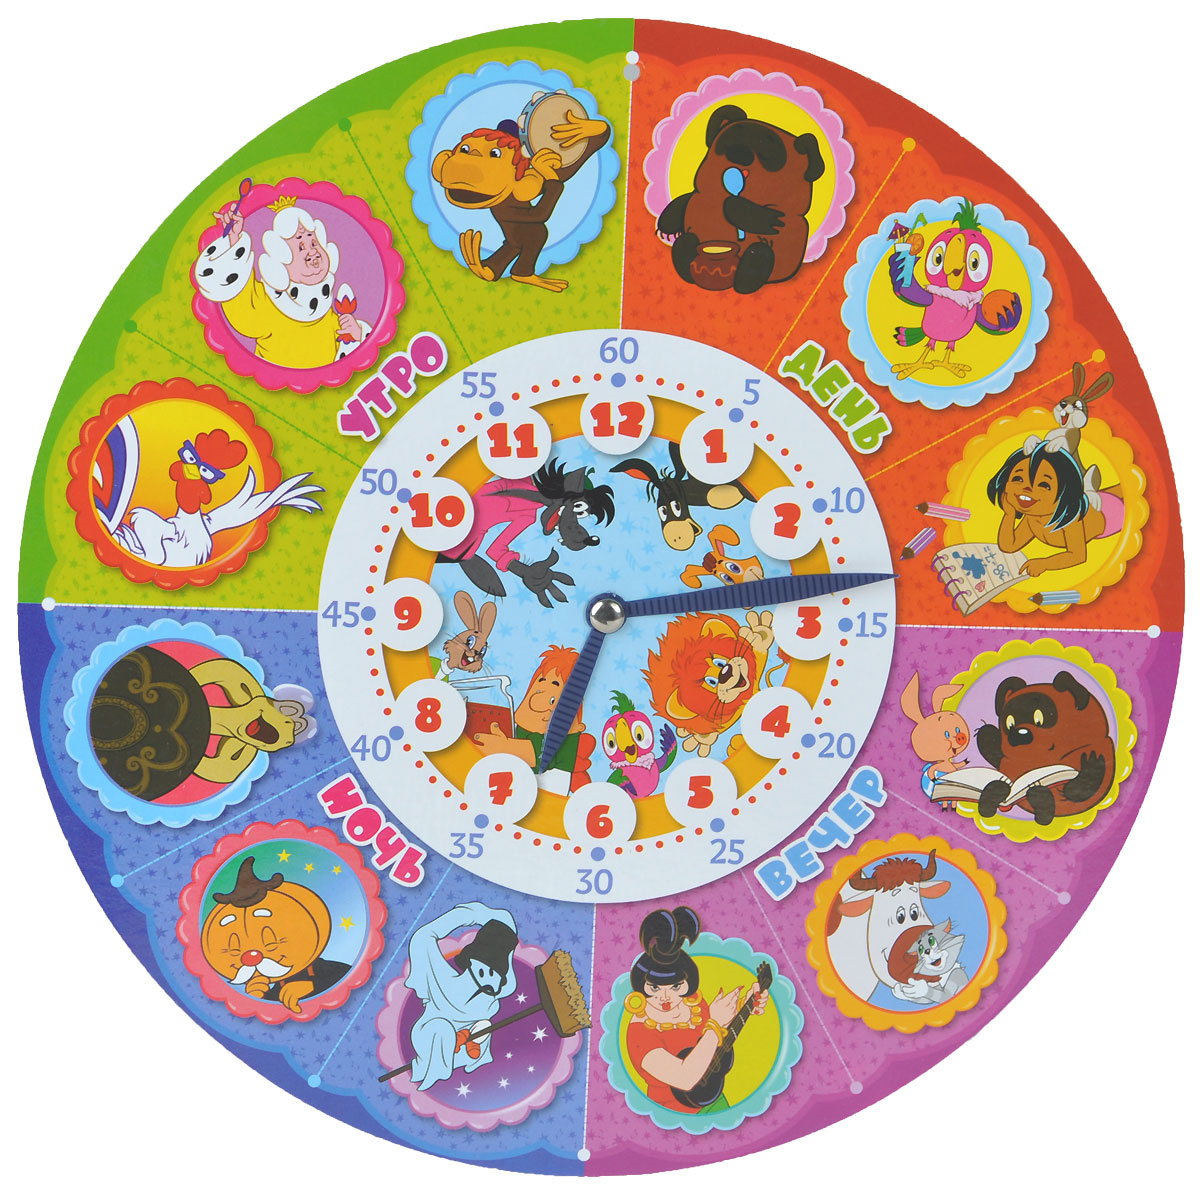 Часы для ребенка в детский сад. Часы русский стиль Союзмультфильм. Часы для детского сада. Часы обучающие для детей. Часы распорядок дня для детей.